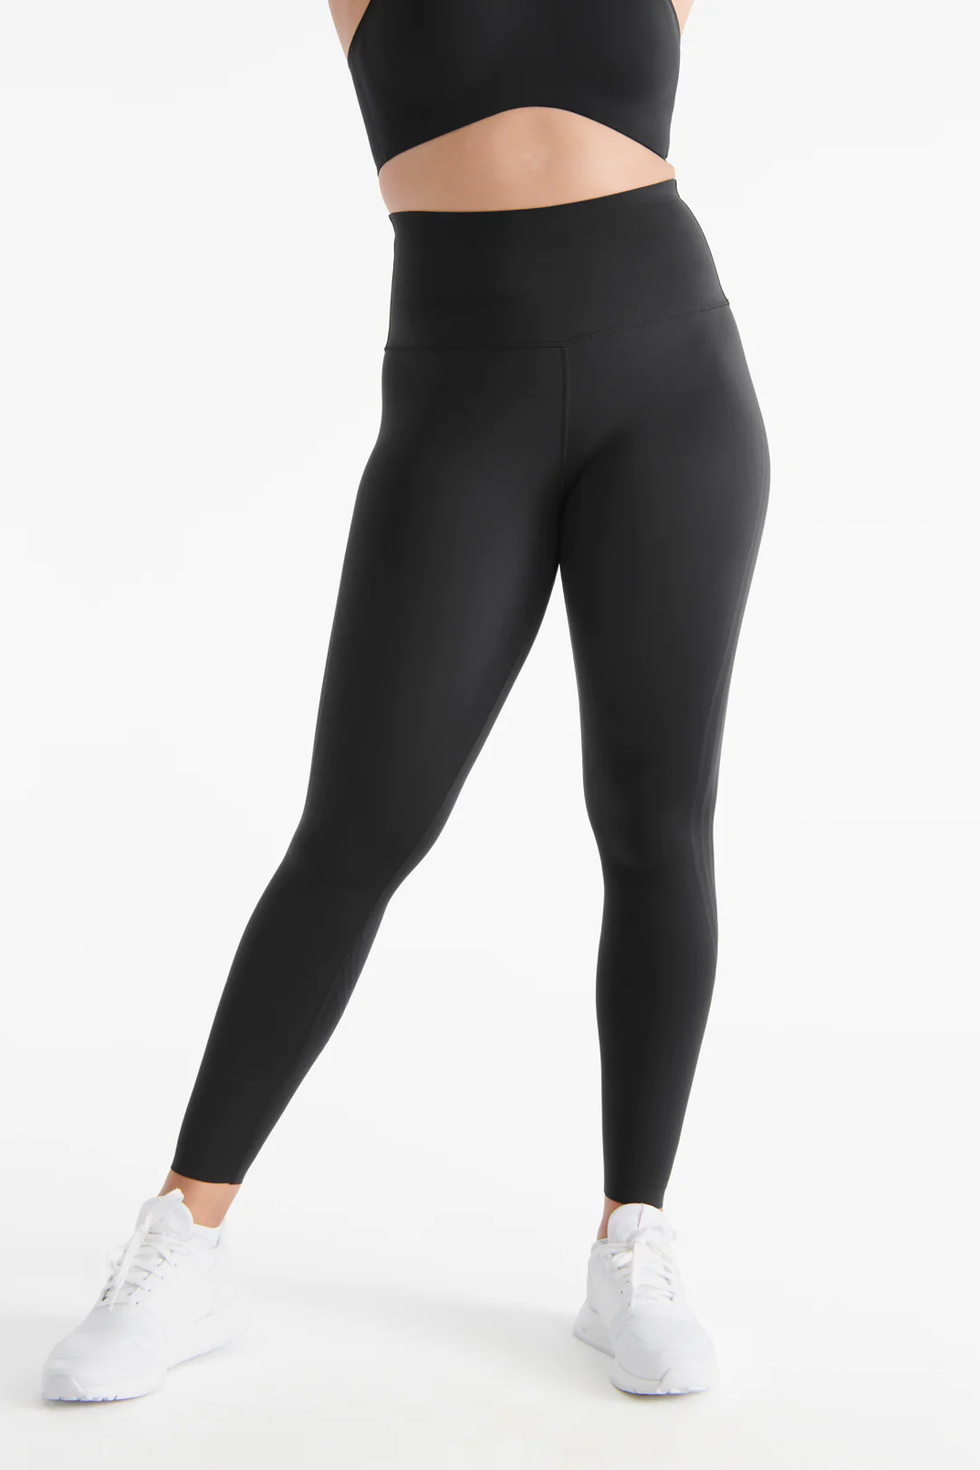 the best black leggings, ever 💭 #leggings #leggingsoftiktok